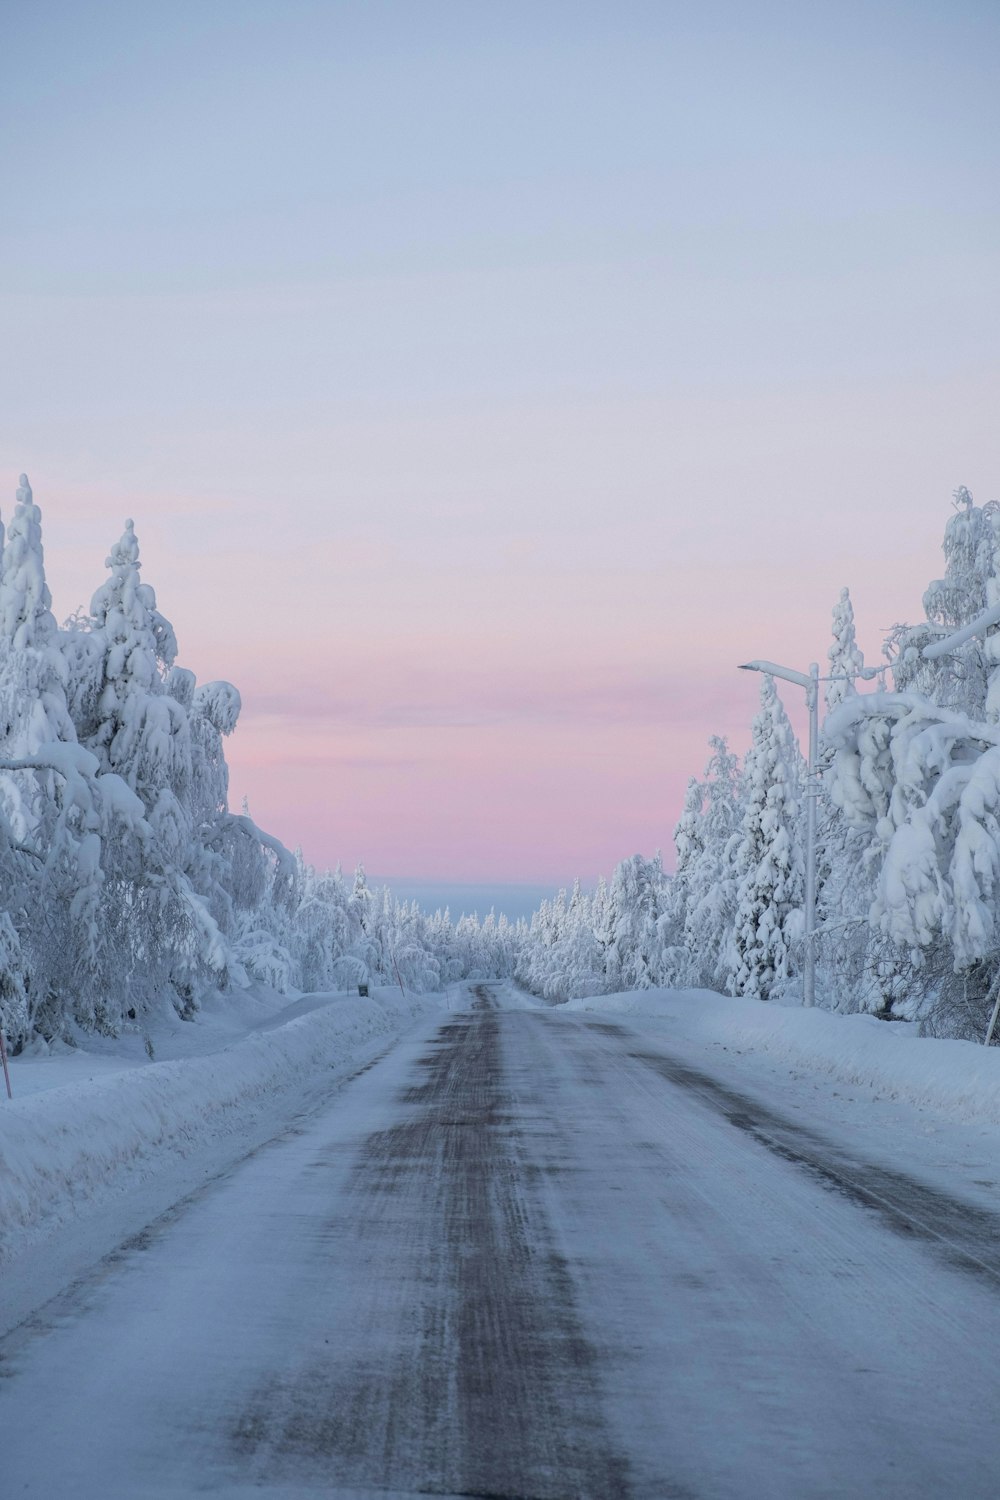 日中の雪に覆われた木々や道路